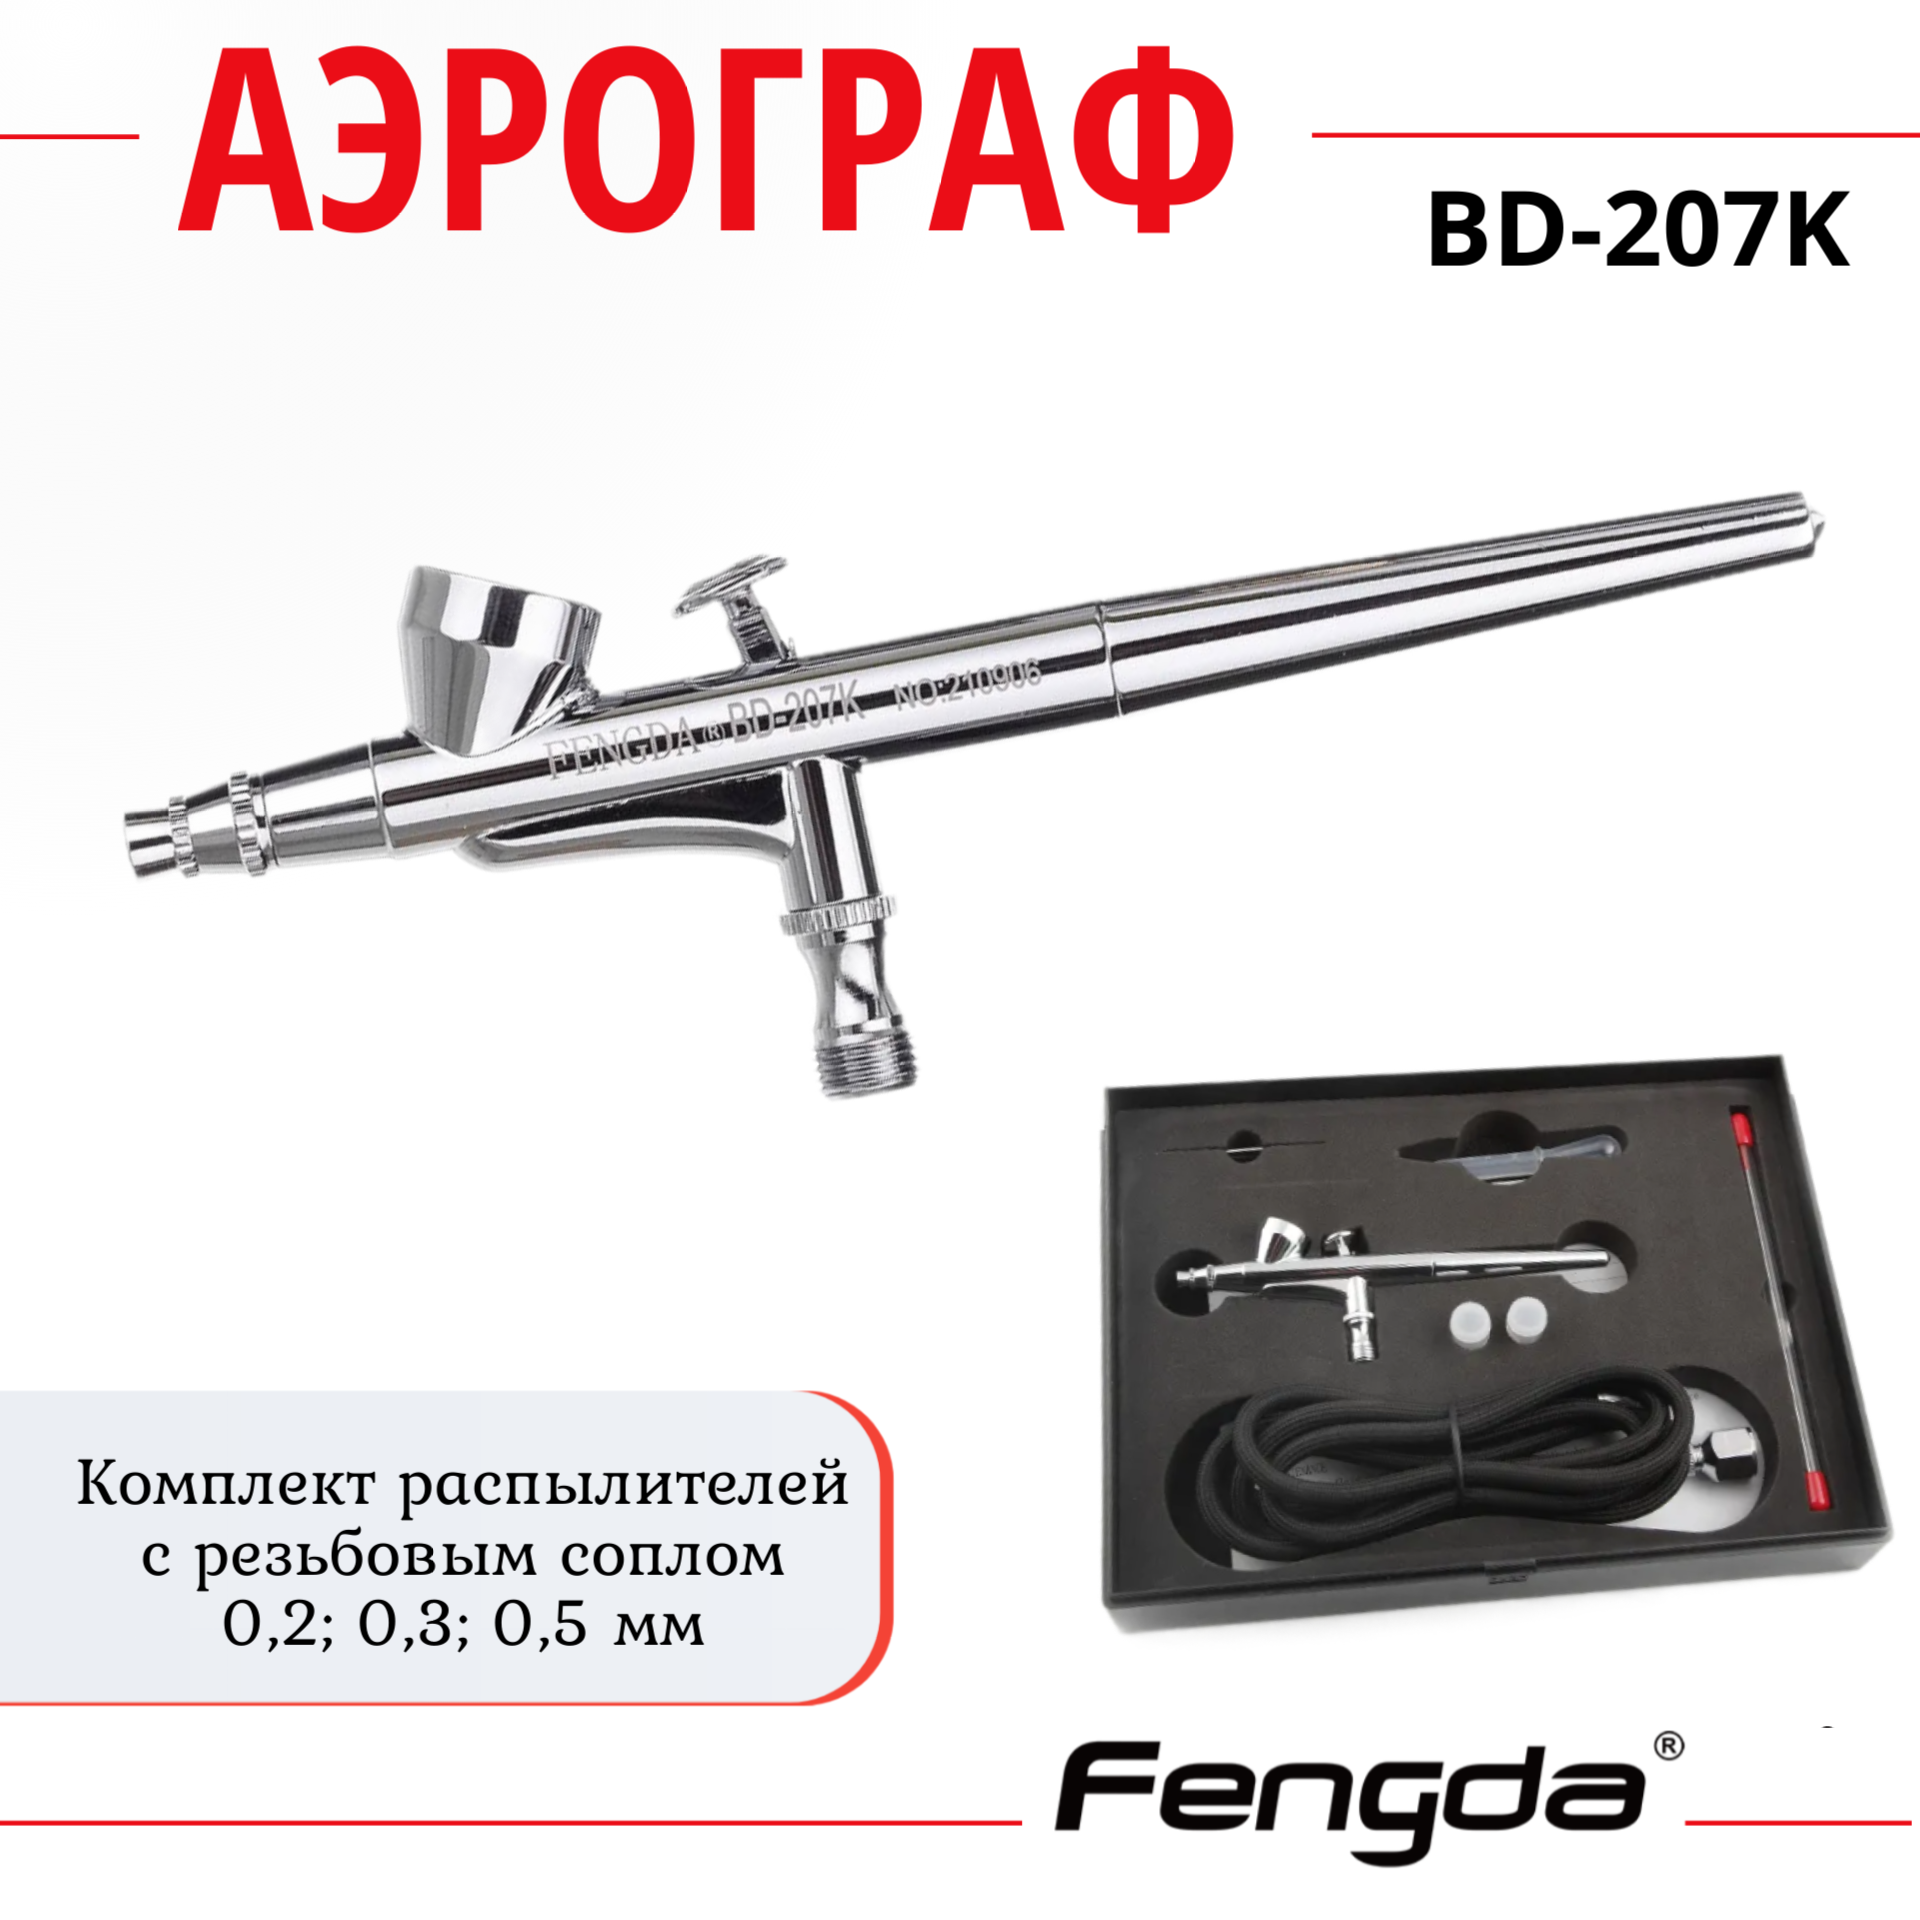 Аэрограф FENGDA BD-207K классического типа пипетка 10 мл для опытов и творчества набор 10 шт